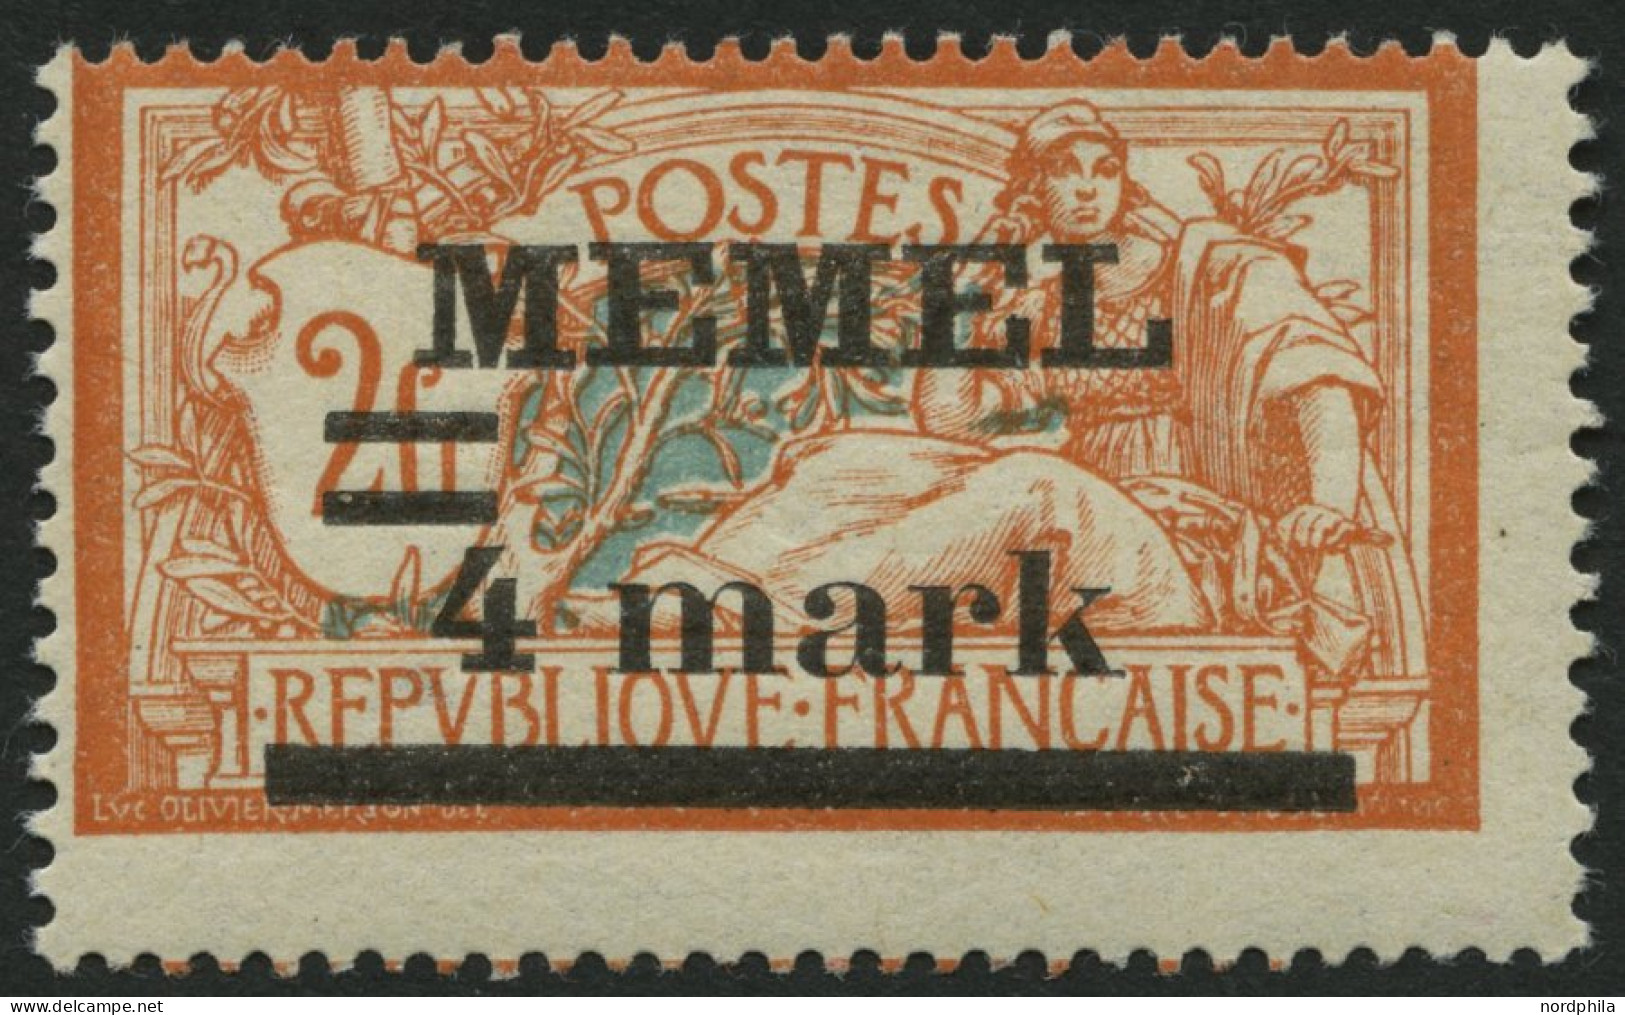 MEMELGEBIET 31yIPF Ia , 1920, 4 M. Auf 2 Fr. Rötlichorange/hellgrünlichblau, Type I, Mit Abart Querbalken Der 4 Verdickt - Klaipeda 1923